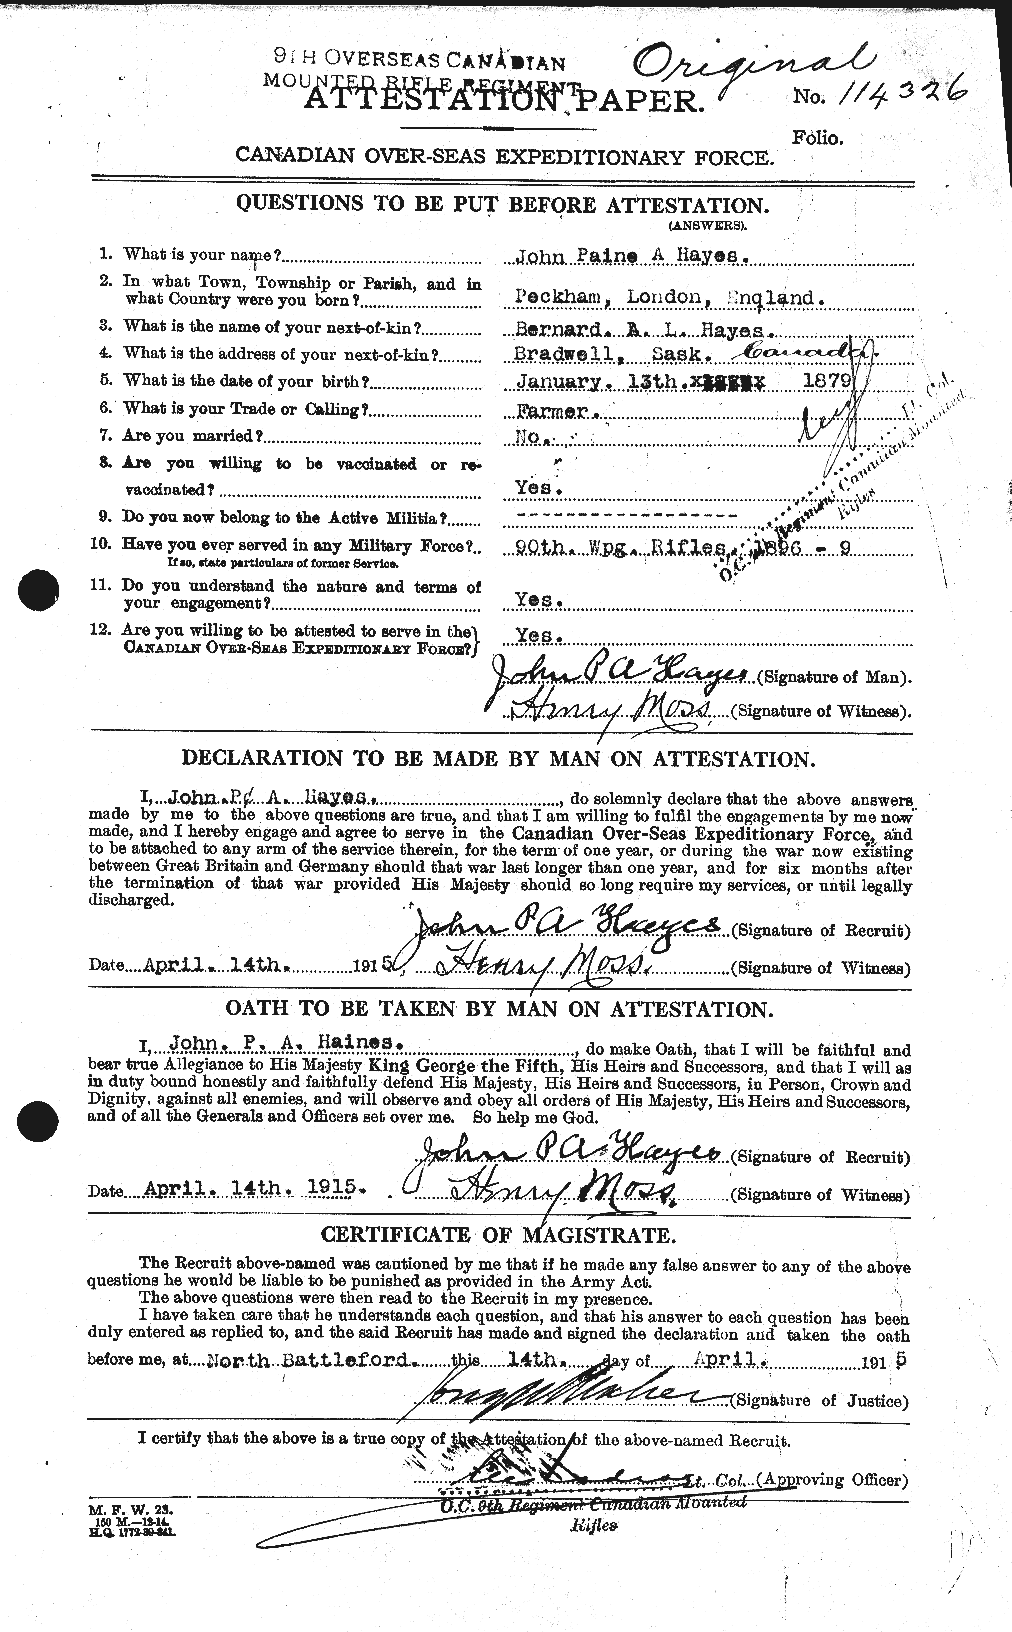 Dossiers du Personnel de la Première Guerre mondiale - CEC 385585a